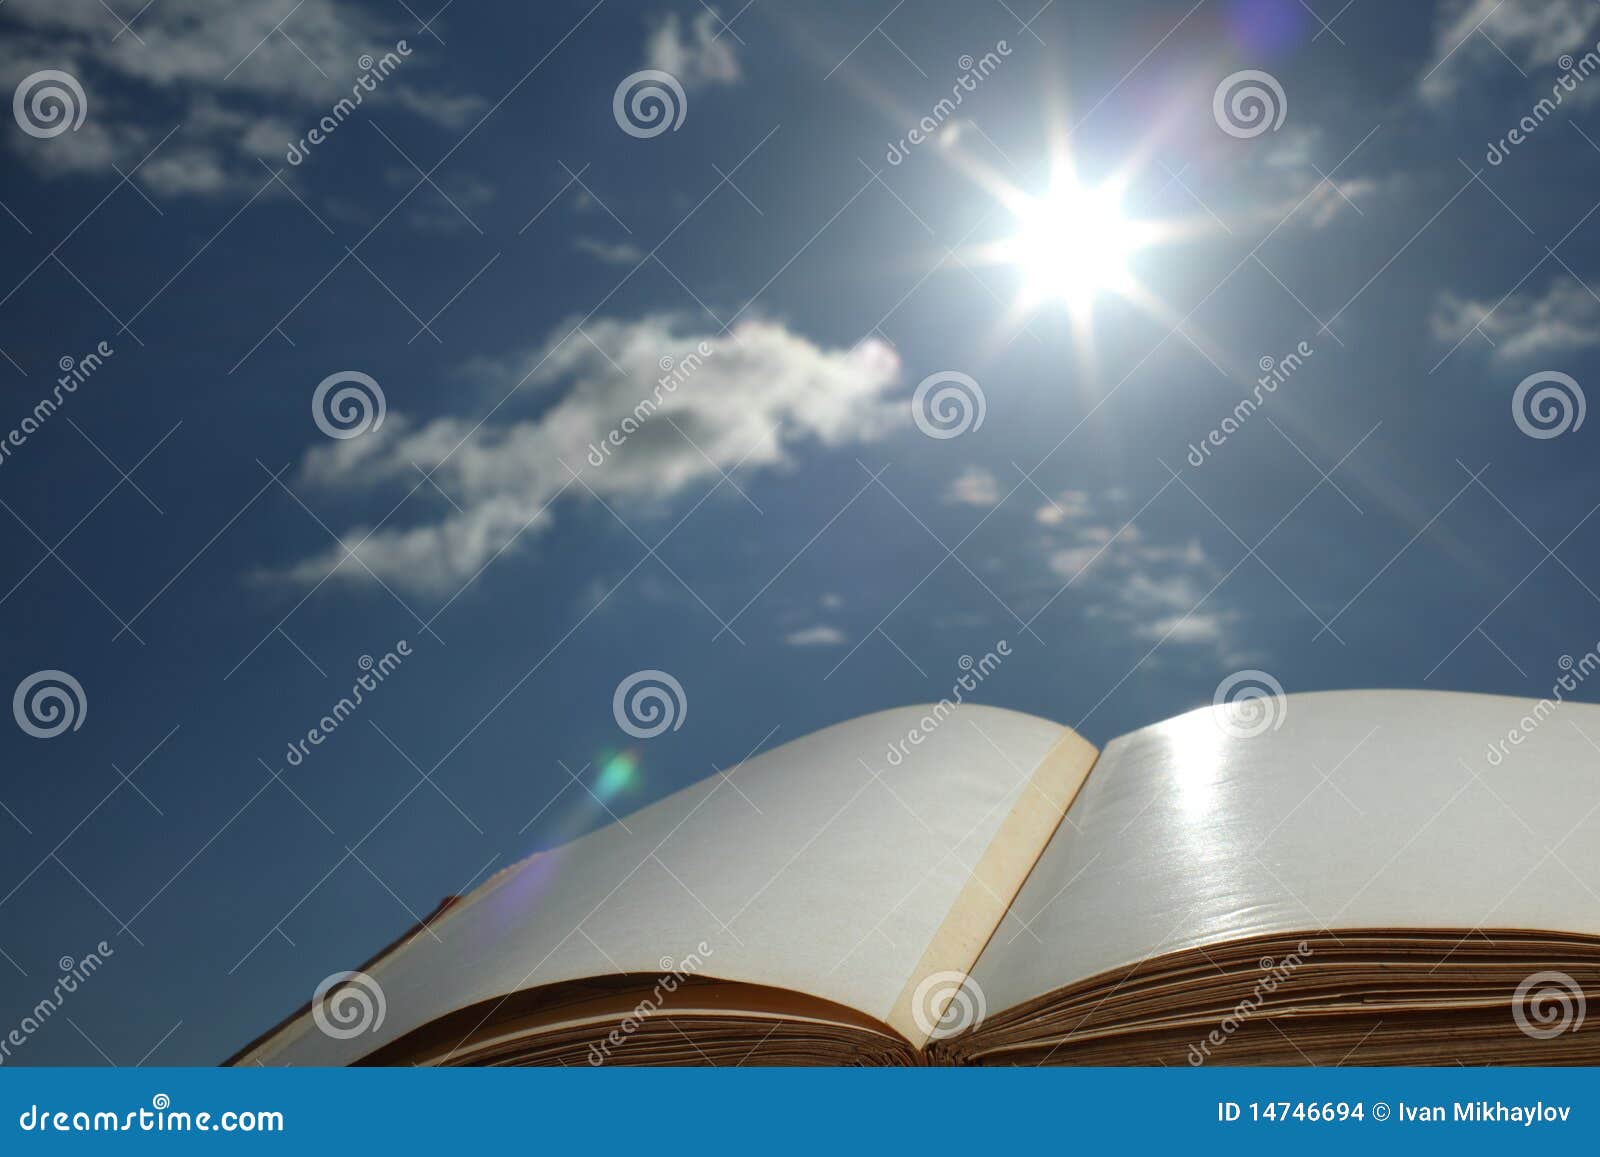 Книга солнечный свет. Книга на фоне неба. Книги раскрытые на фоне неба. Раскрытая книга на фоне неба. Книга солнце.